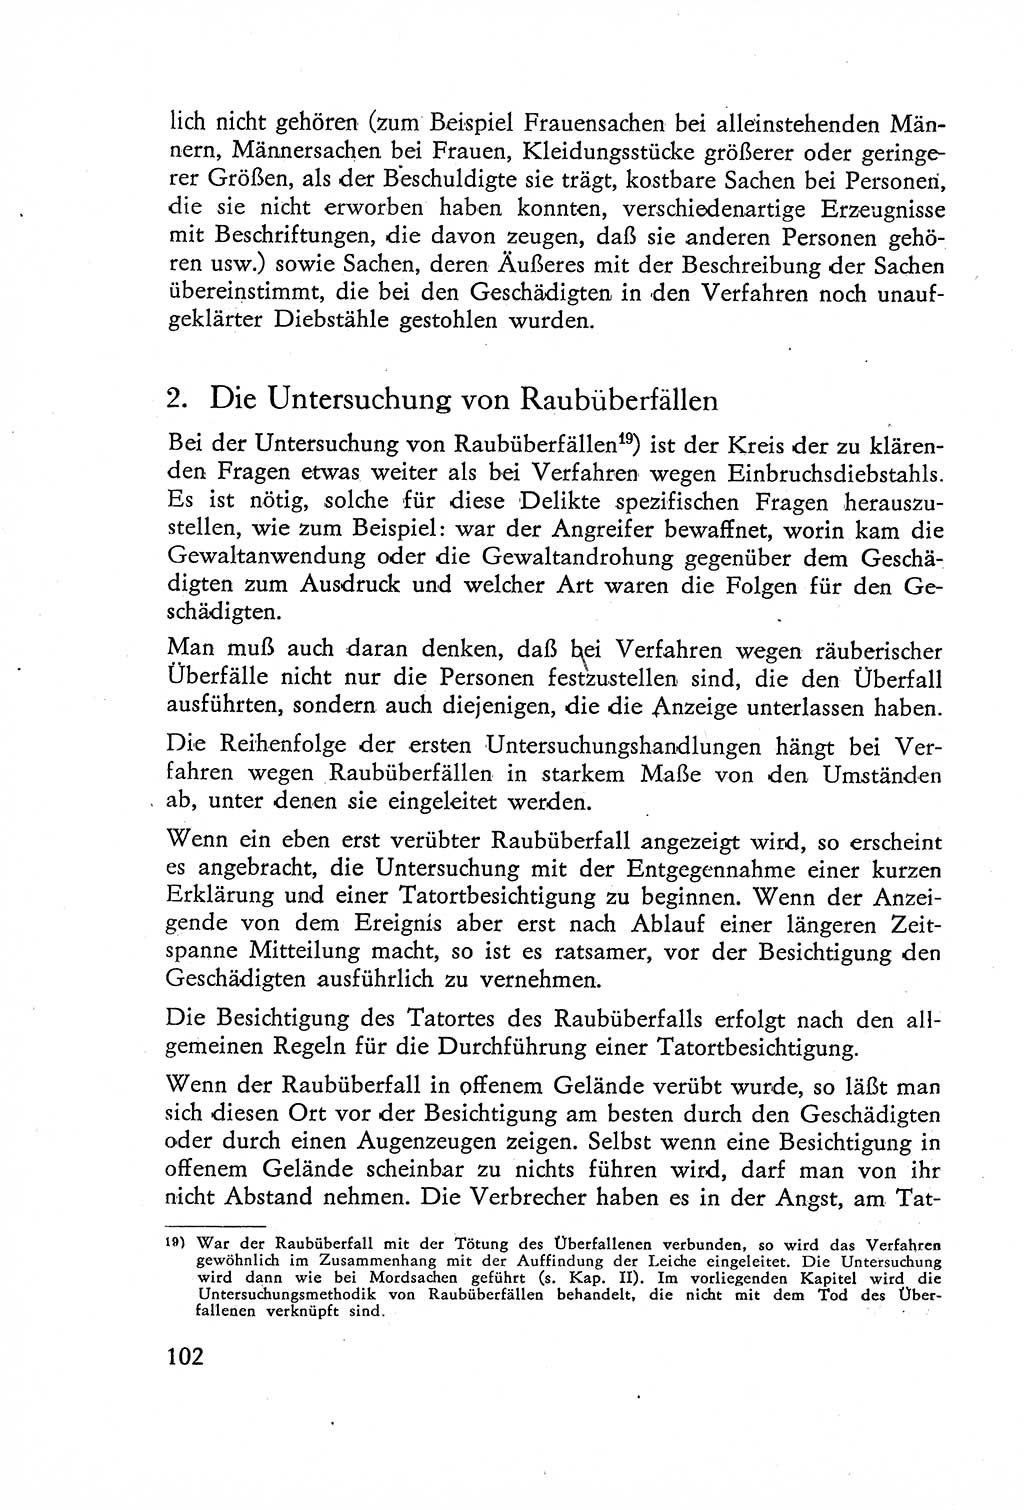 Die Untersuchung einzelner Verbrechensarten [Deutsche Demokratische Republik (DDR)] 1960, Seite 102 (Unters. Verbr.-Art. DDR 1960, S. 102)